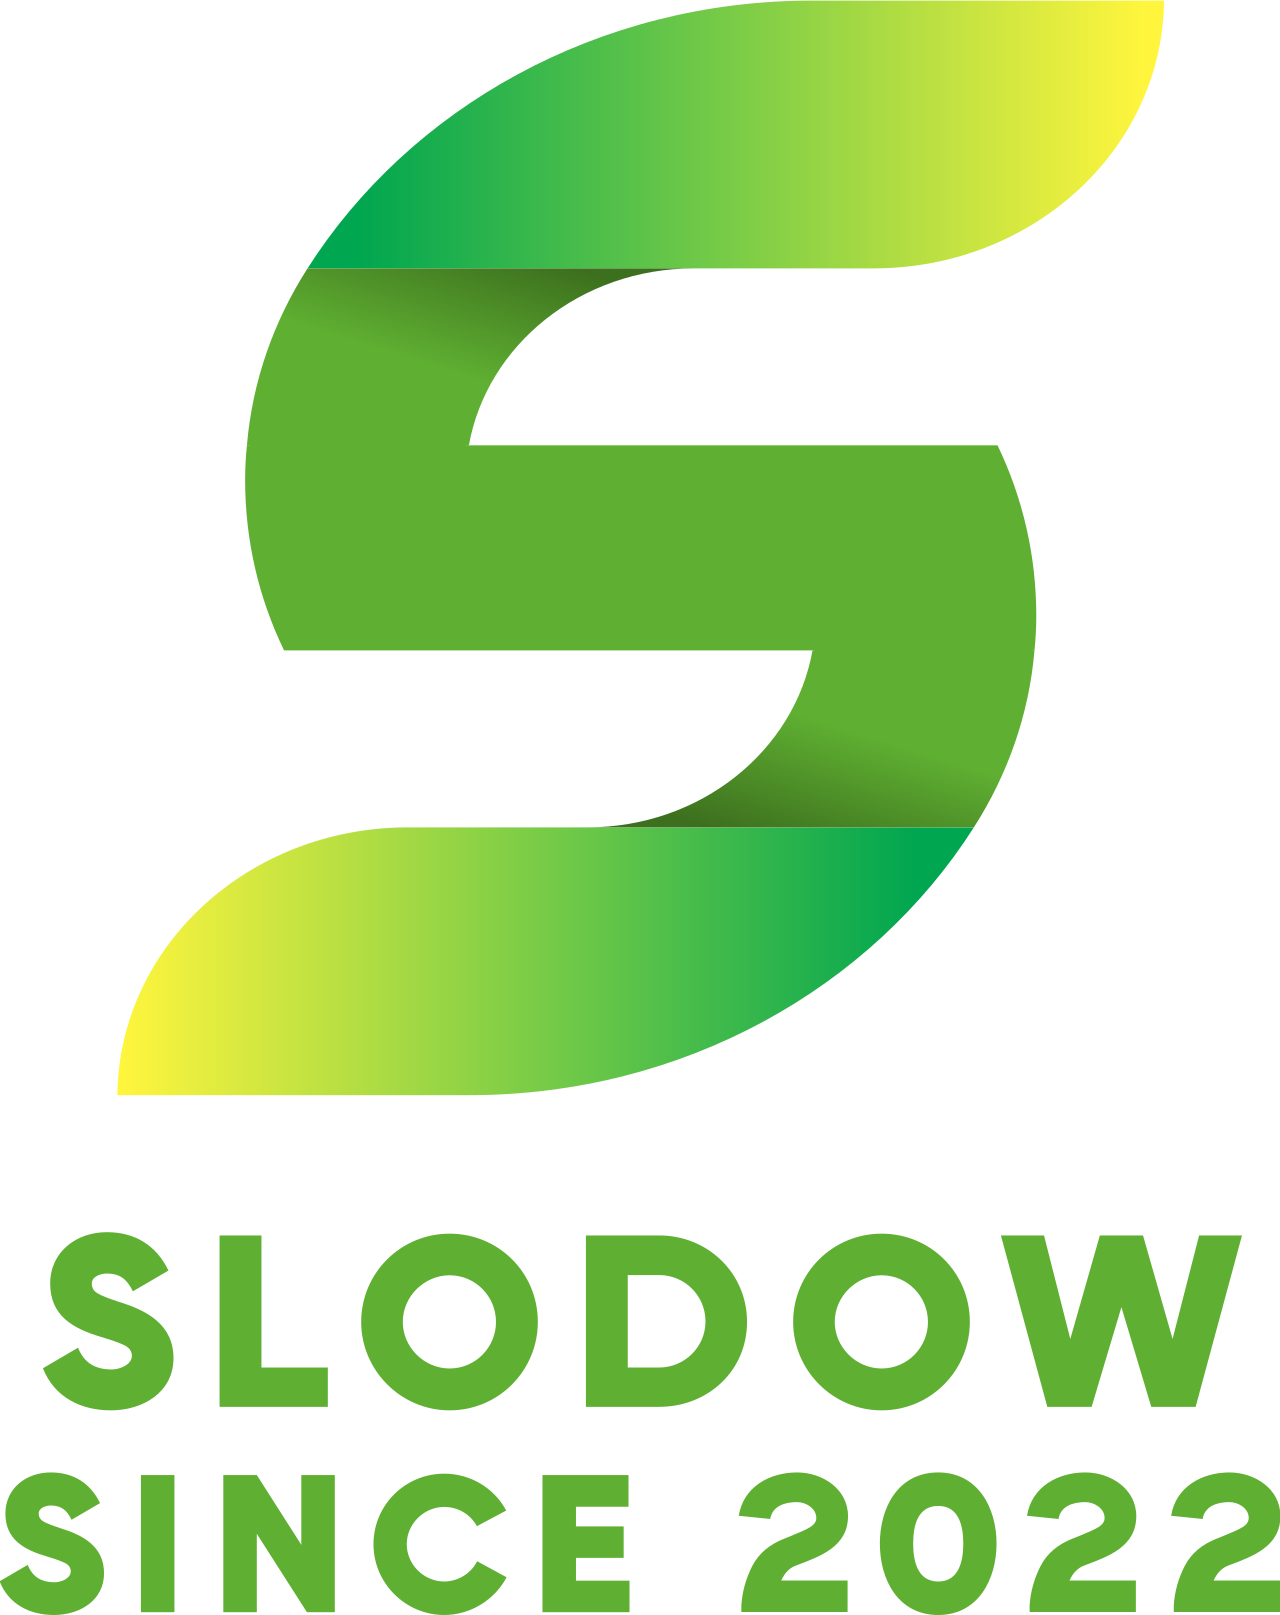 slodow's logo